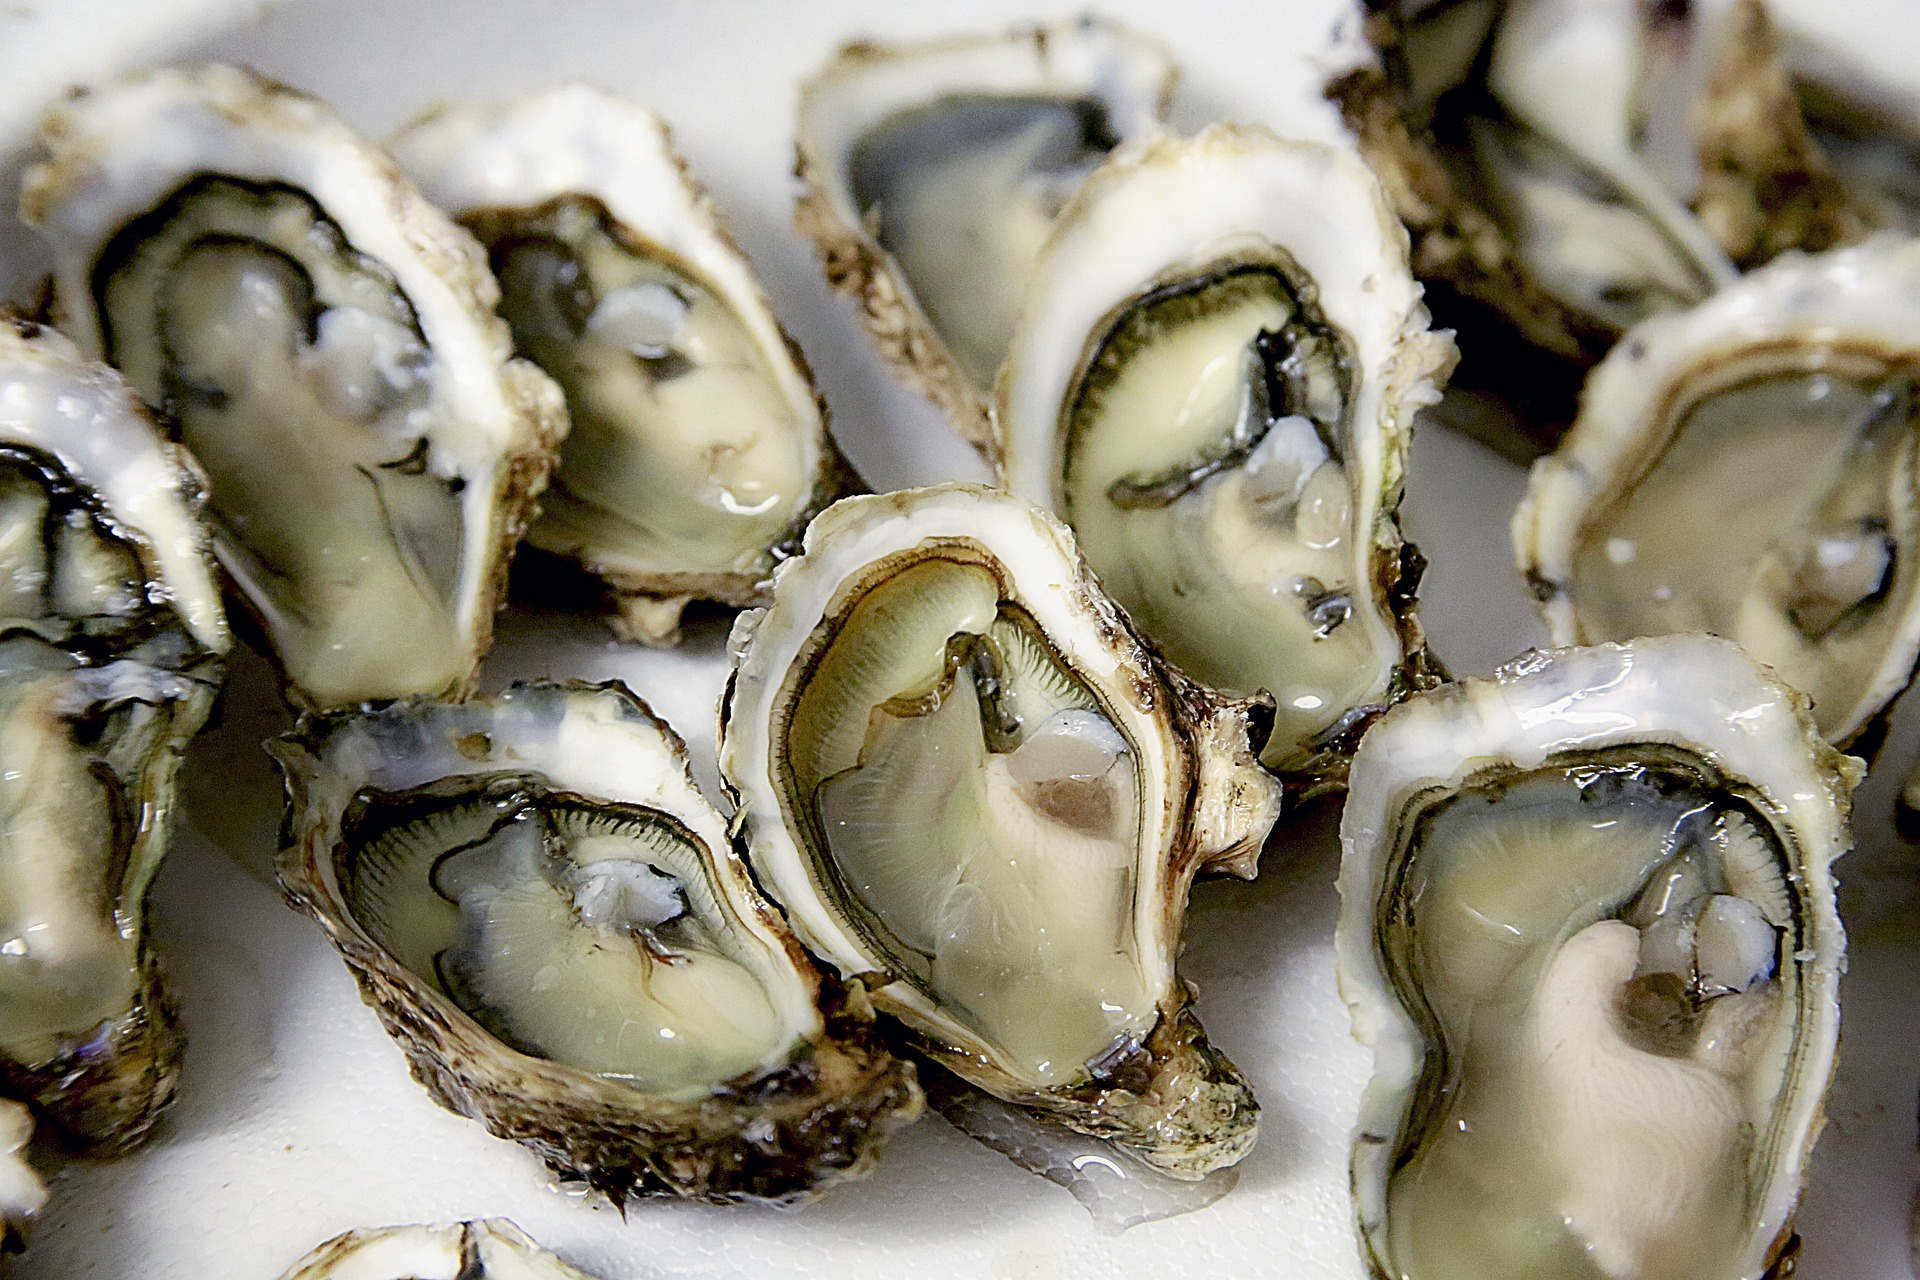 Nouveau coup dur pour les ostréiculteurs : les ventes d'huîtres du Calvados (Normandie) interdites